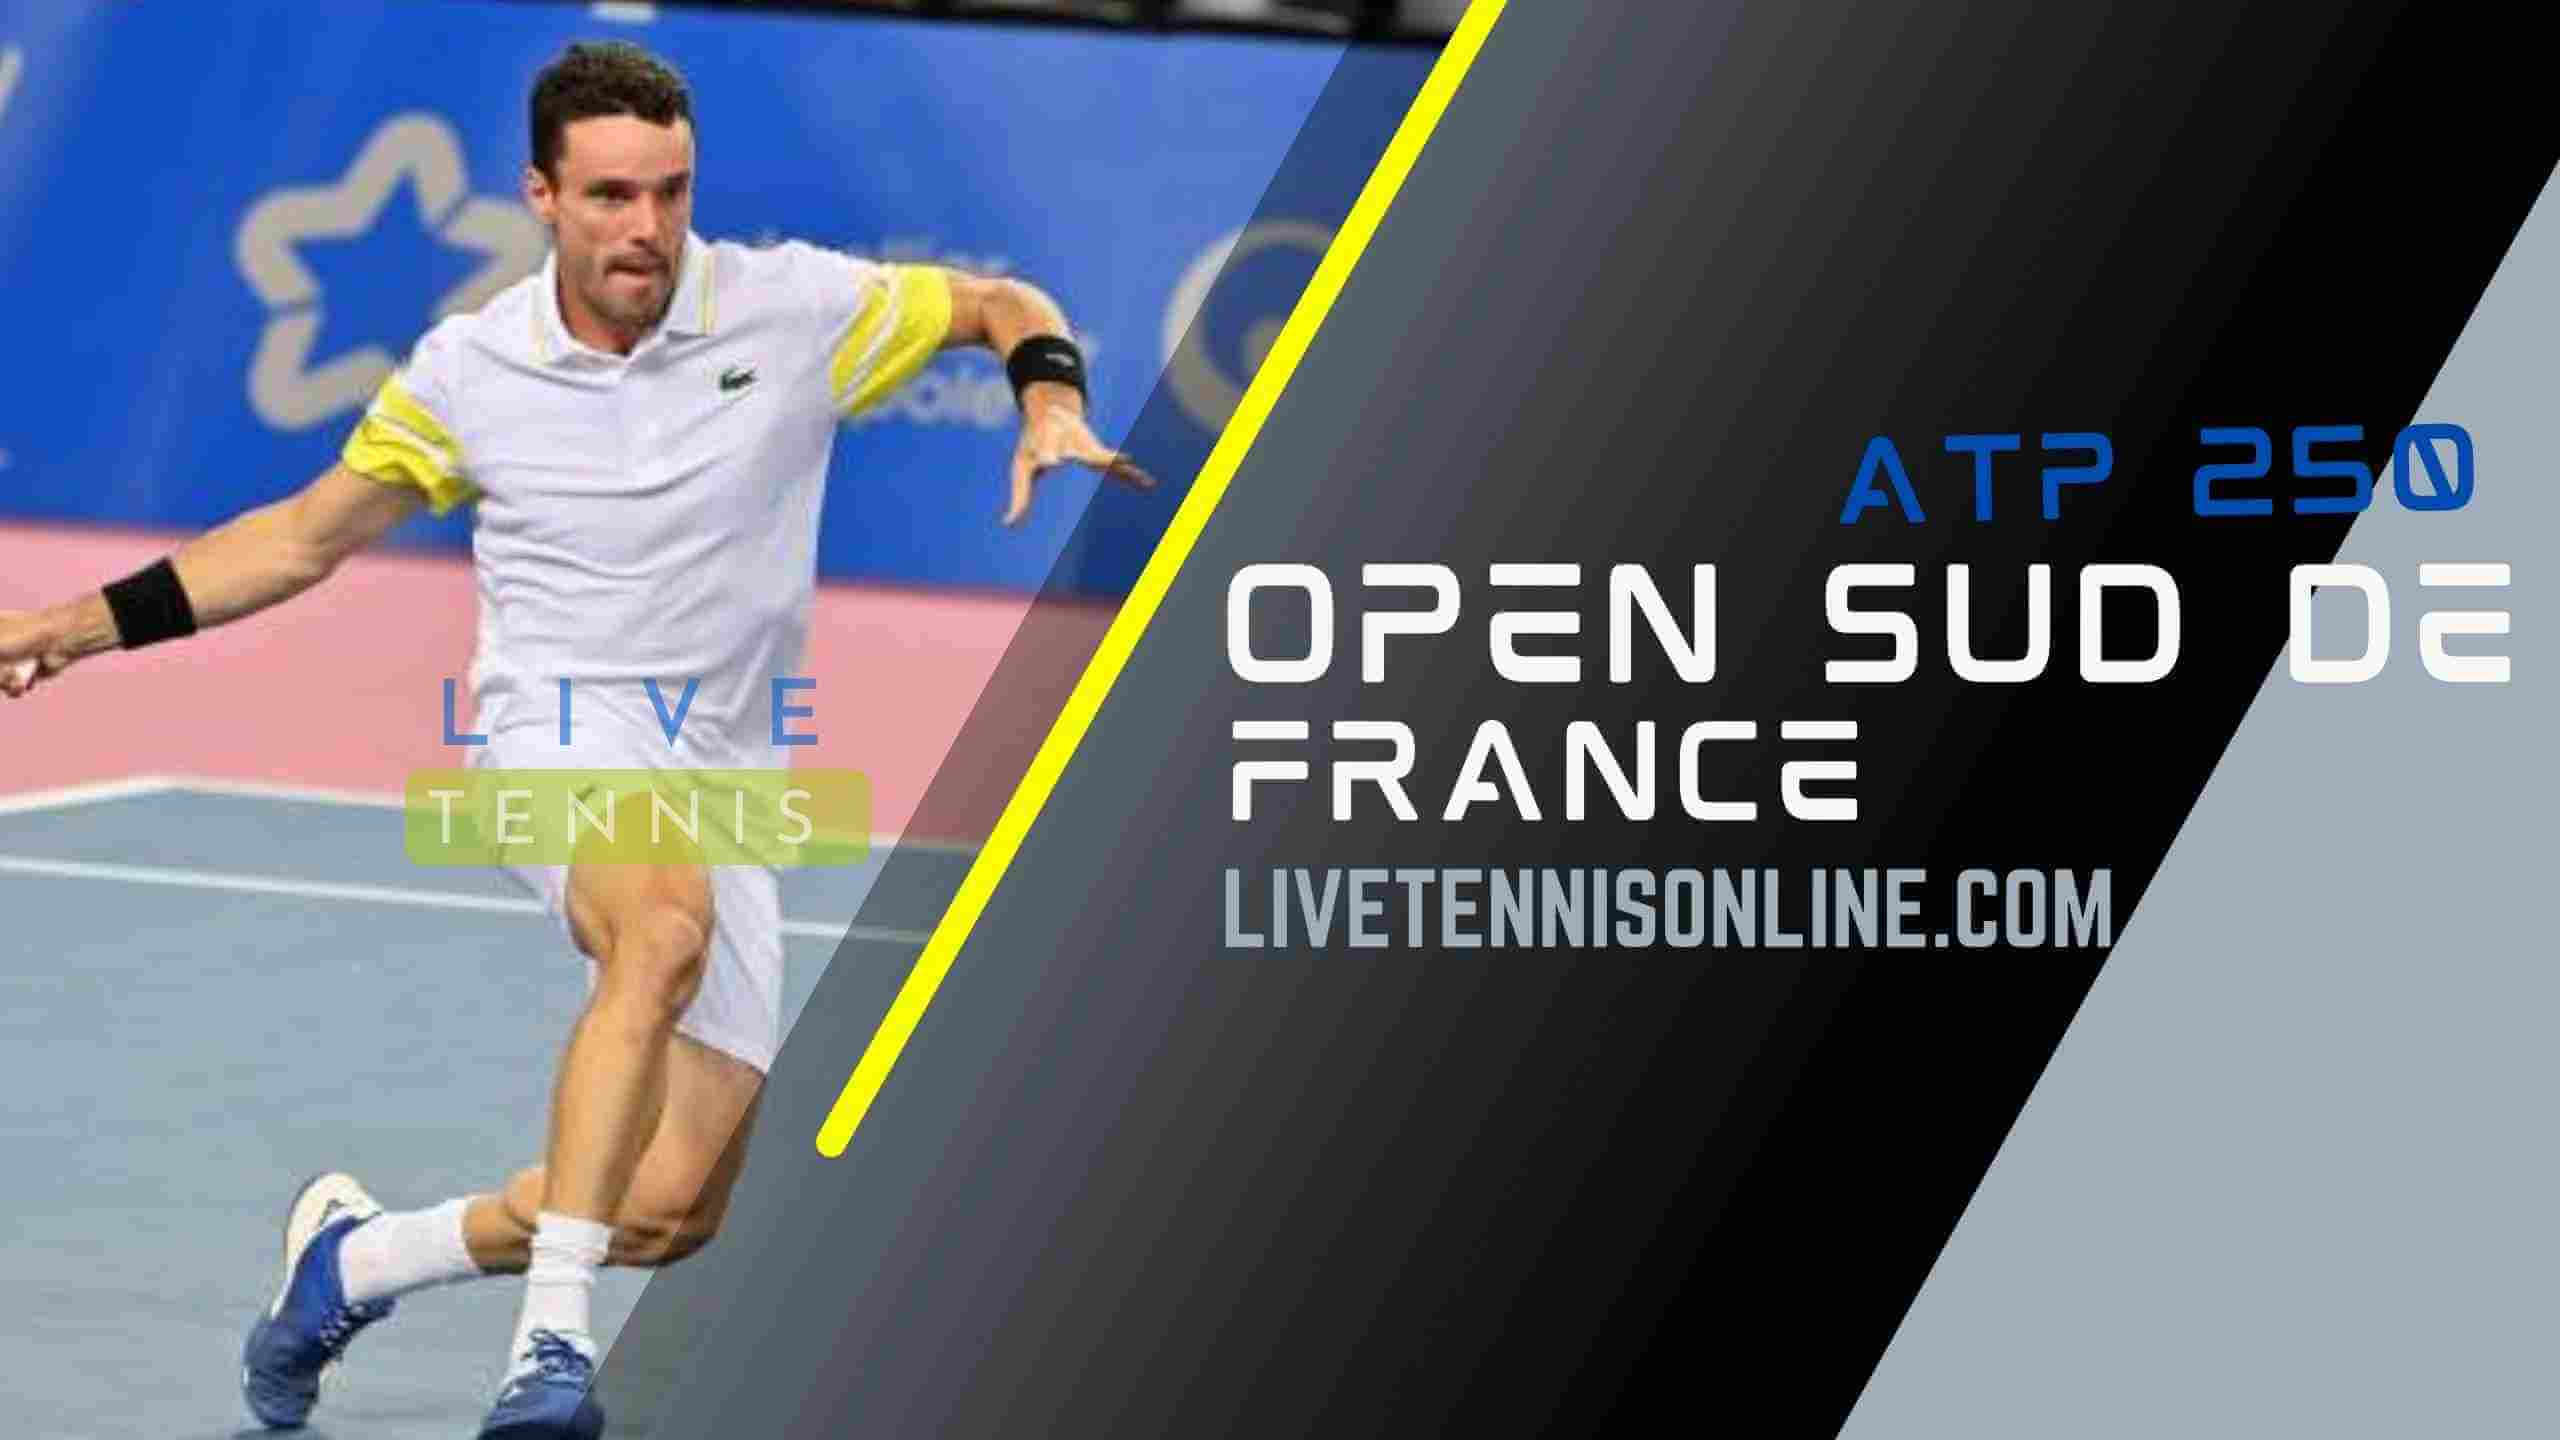 live-tennis-open-sud-de-france-2019